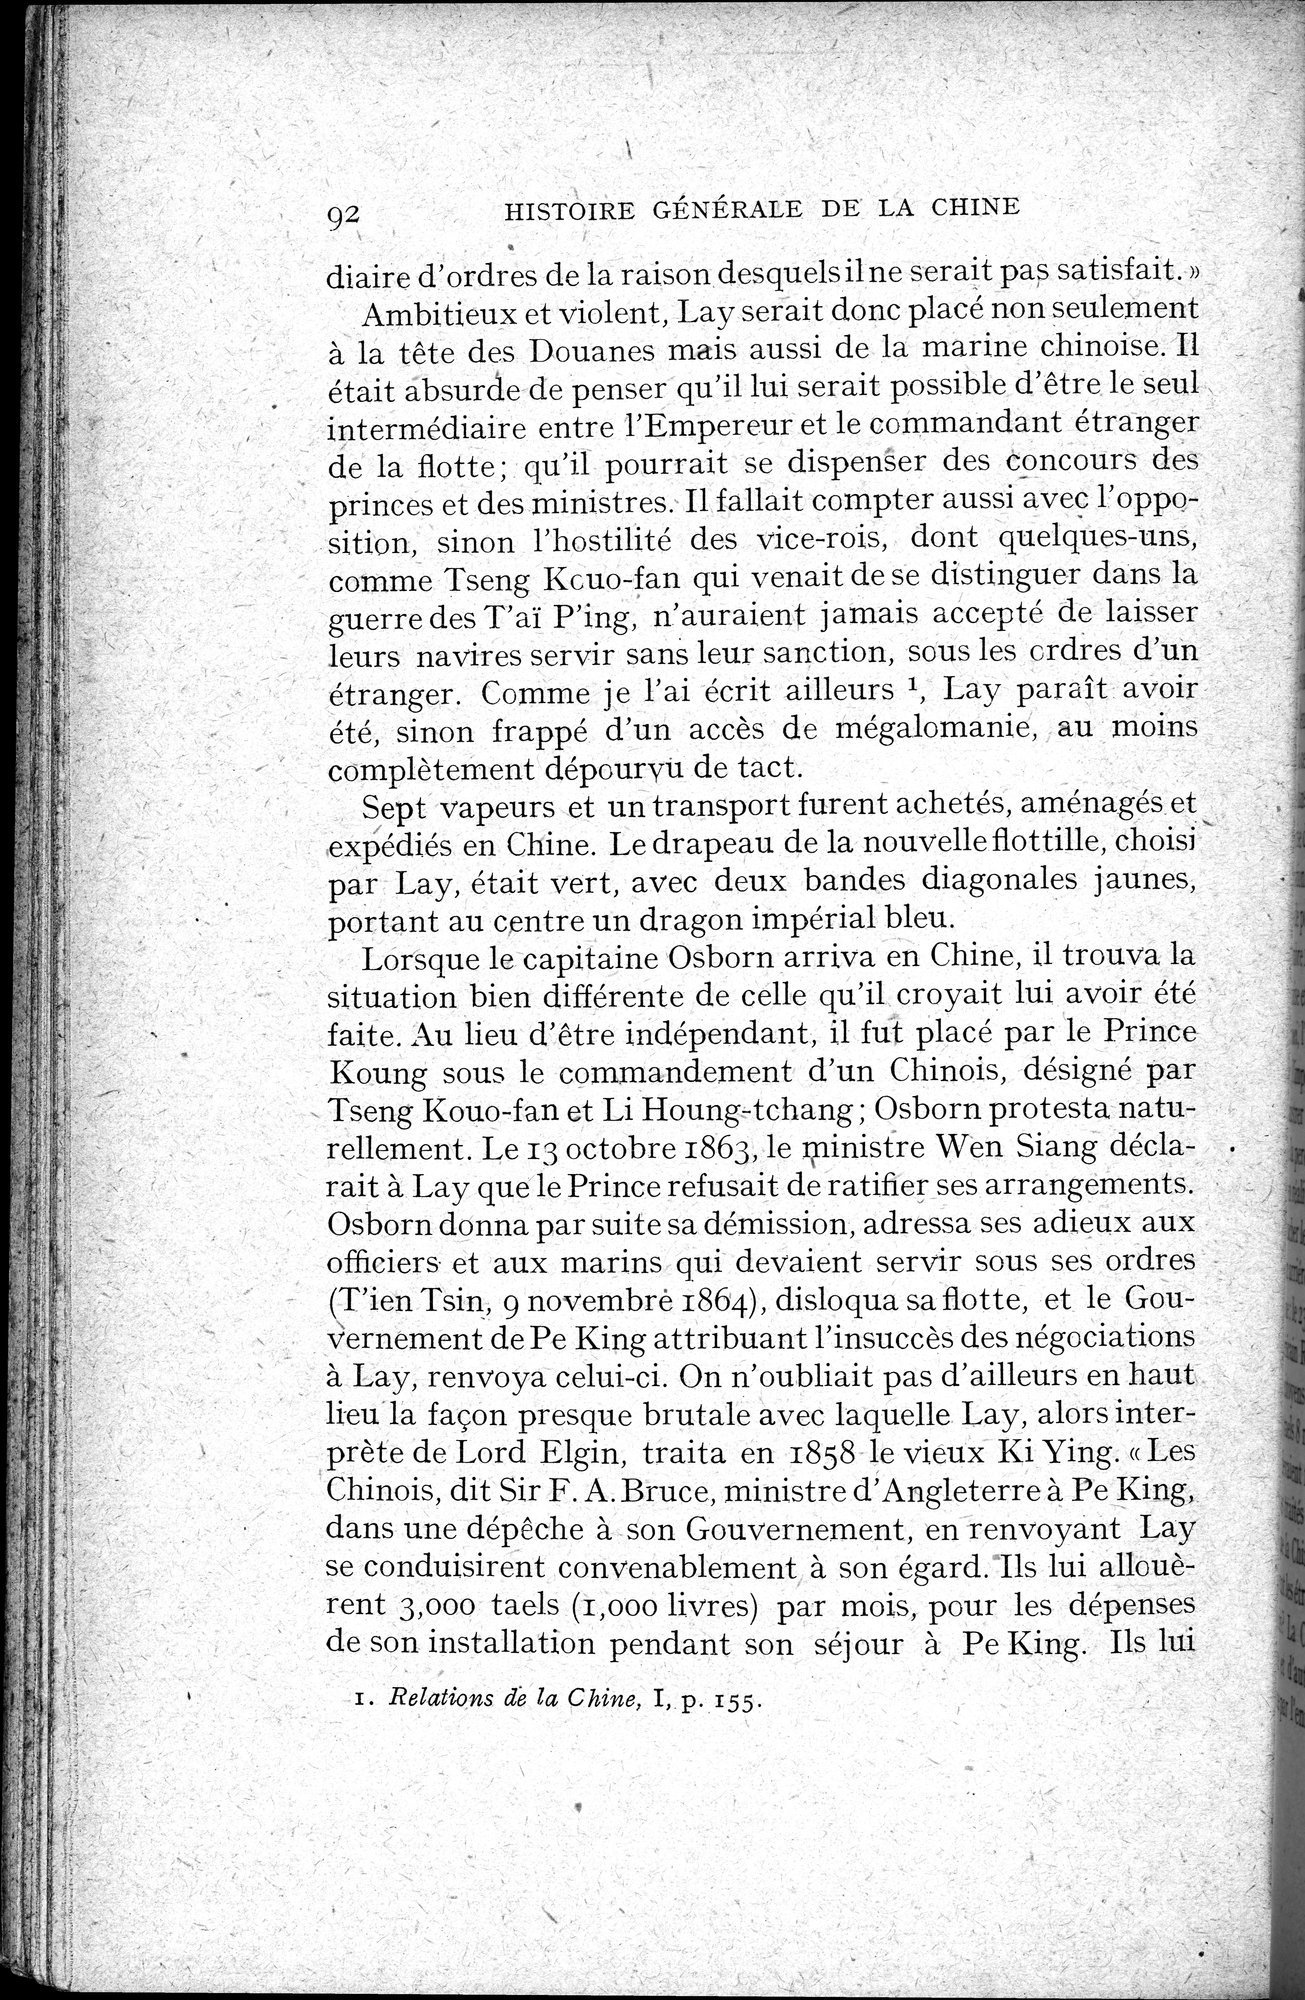 Histoire Générale de la Chine : vol.4 / Page 94 (Grayscale High Resolution Image)